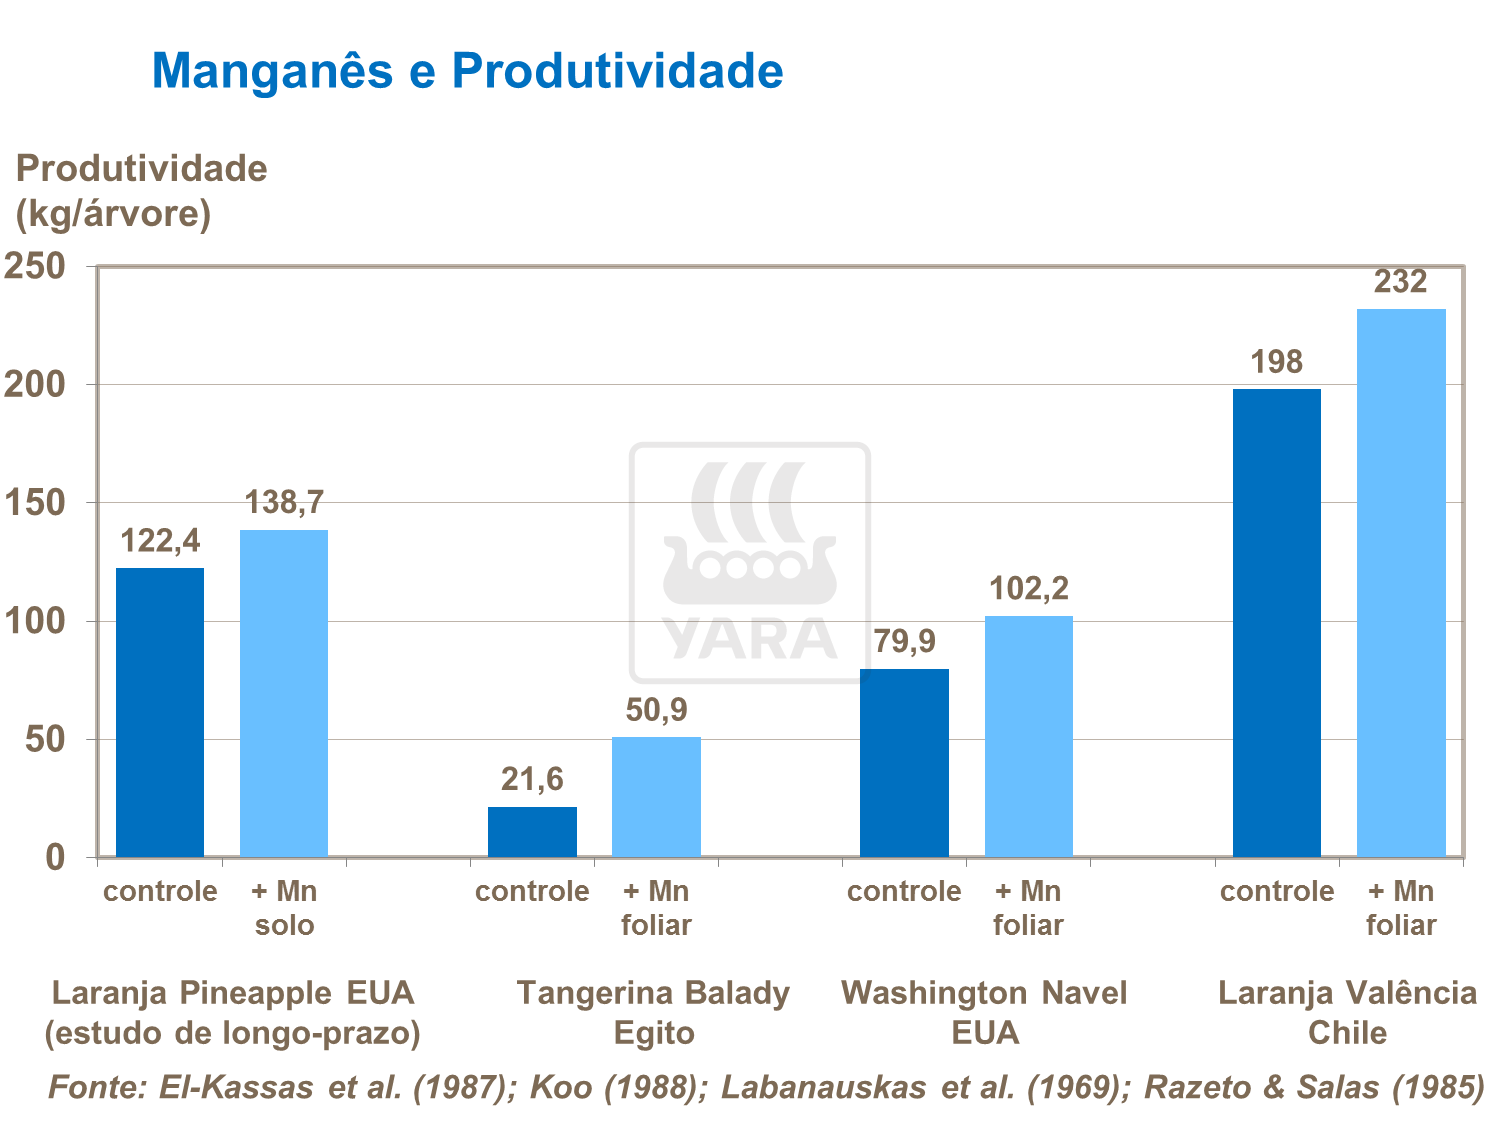 Manganês e Produtividade